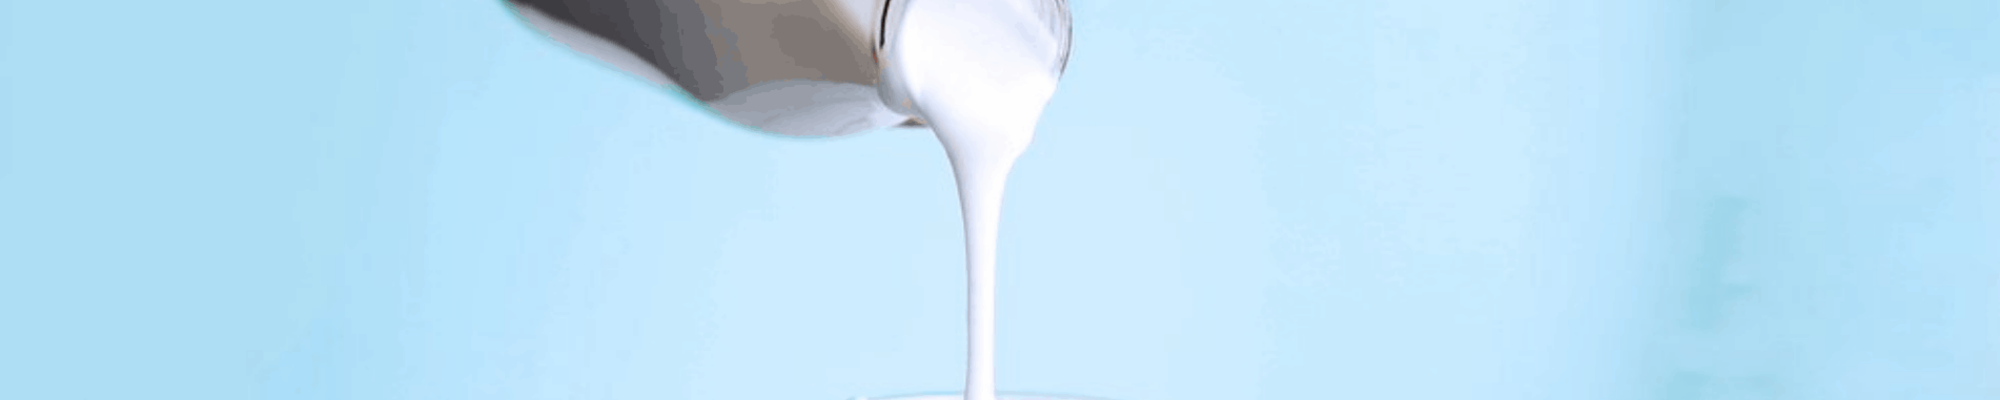 Mliečne výrobky #2: Acidko aj kefír sú kamoši